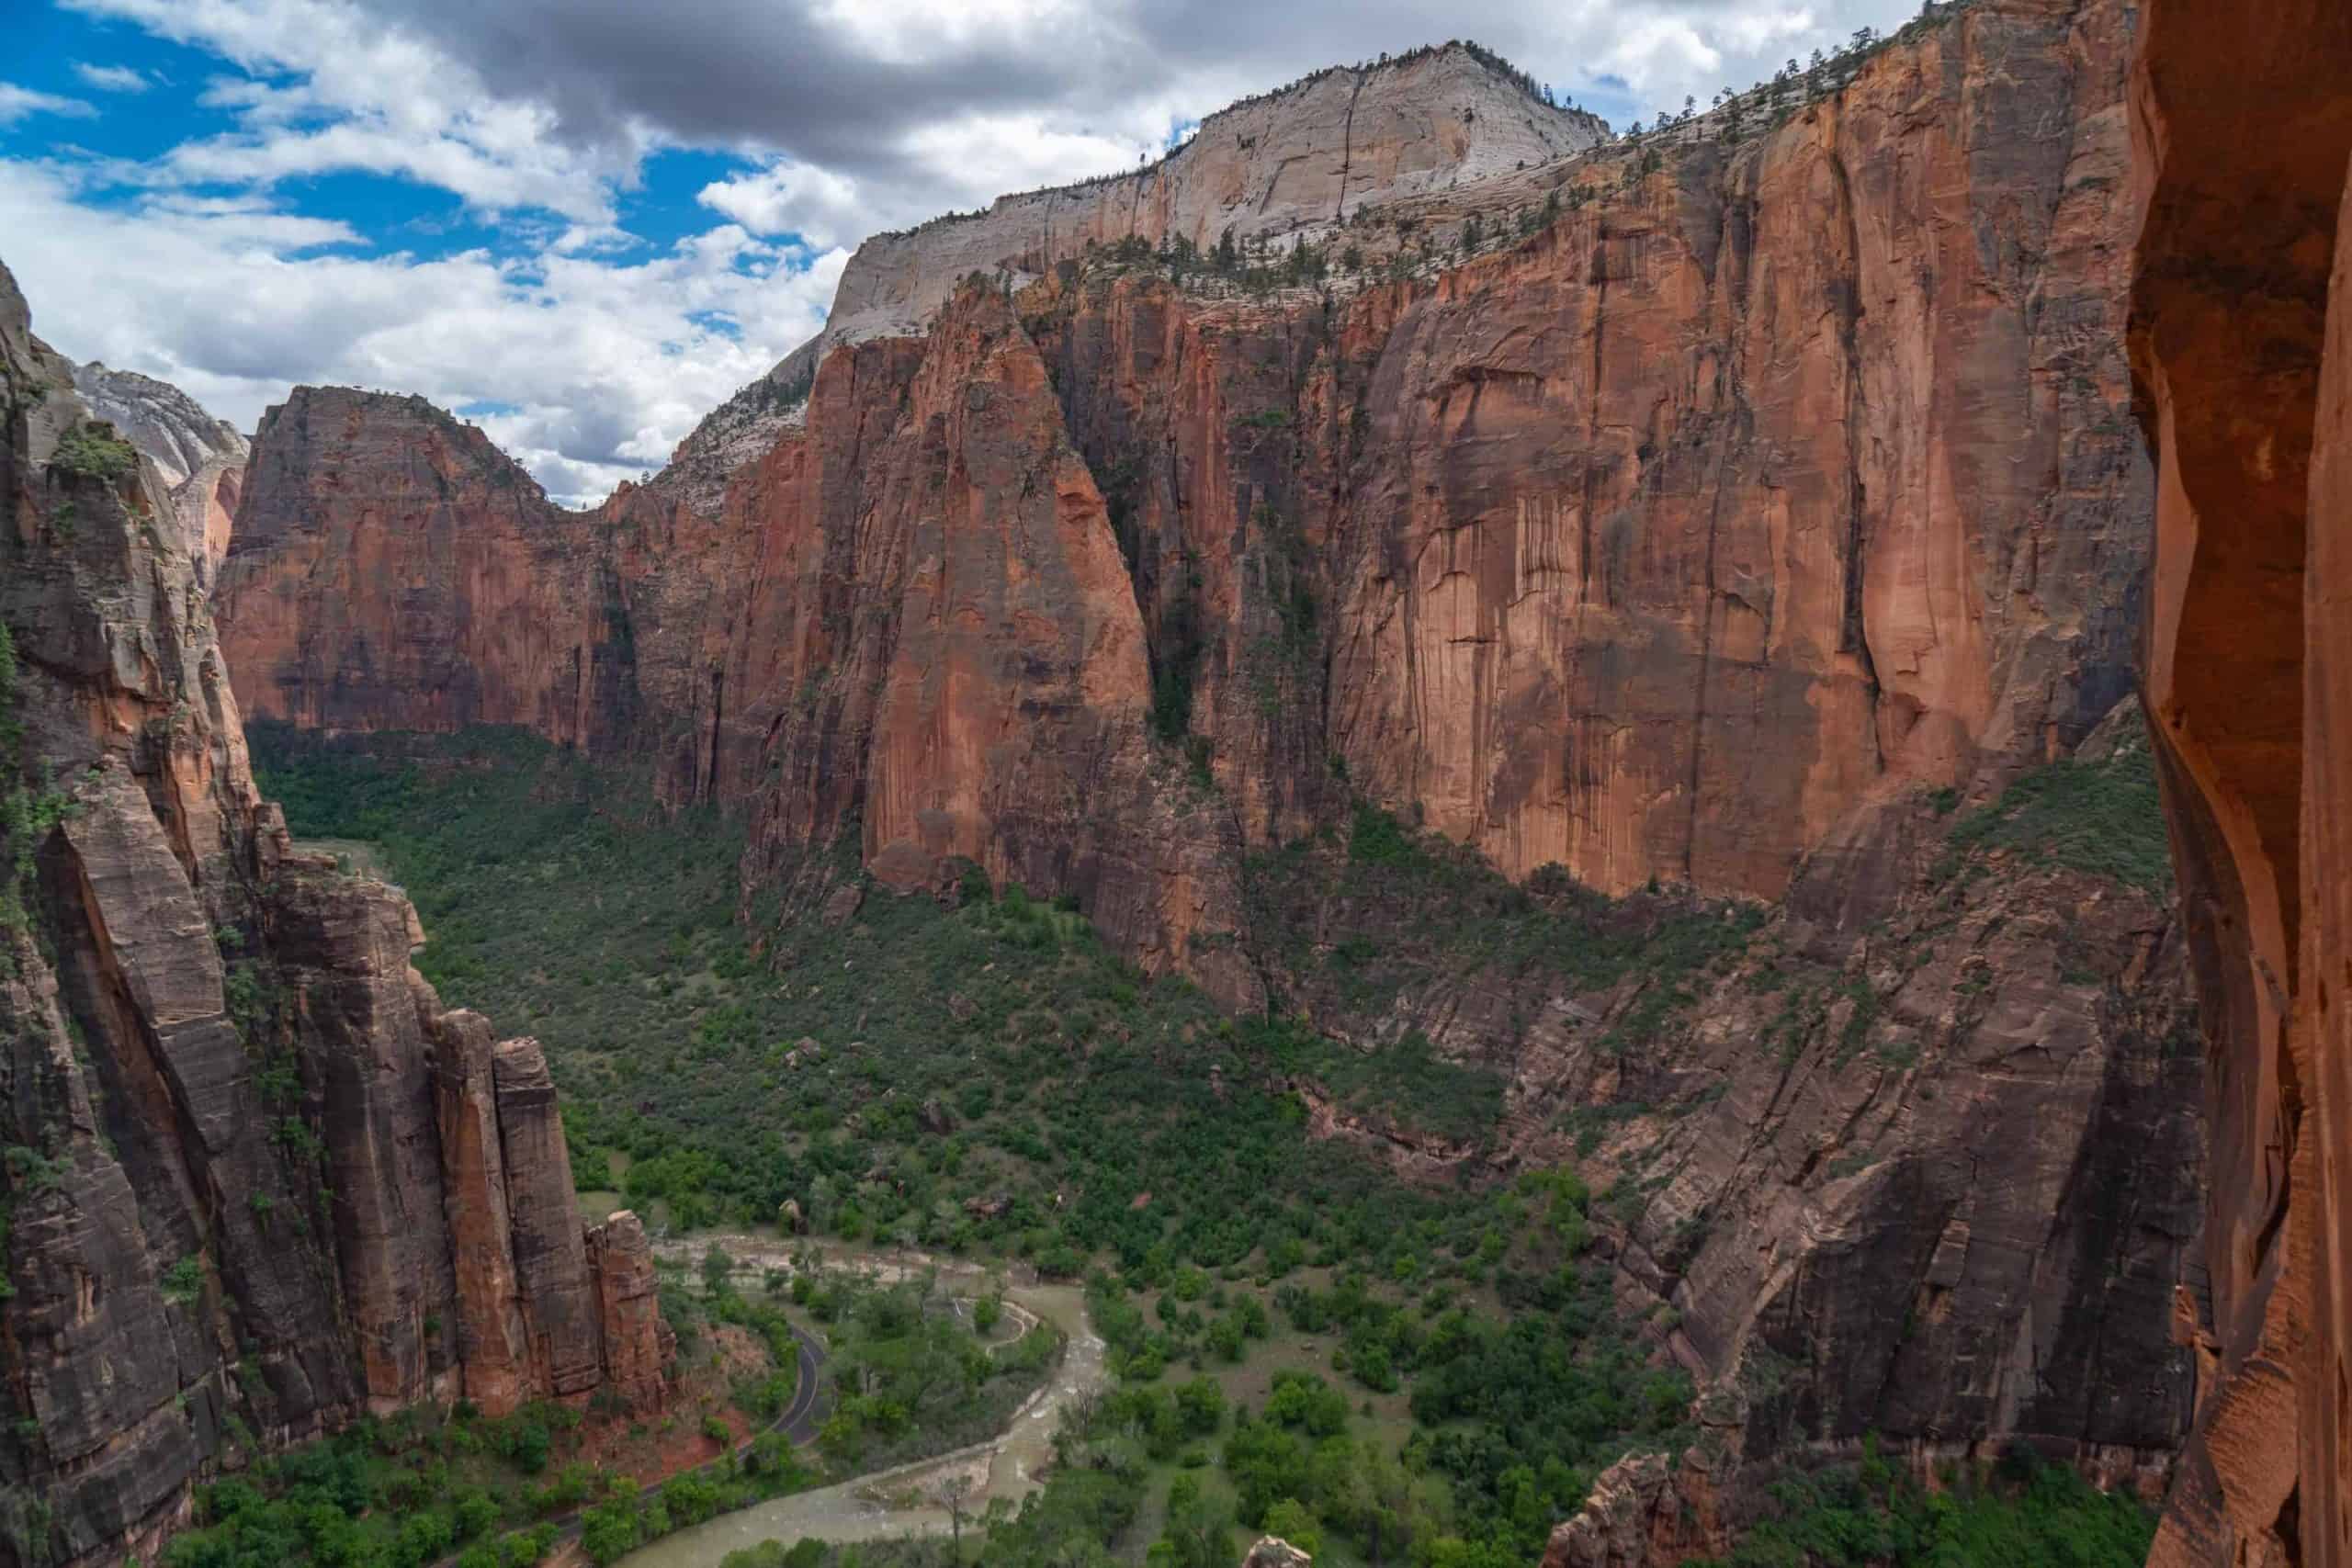 La vista desde la cima de un cañón en el Parque Nacional Zion, con vistas impresionantes e imponentes formaciones rocosas rojas.